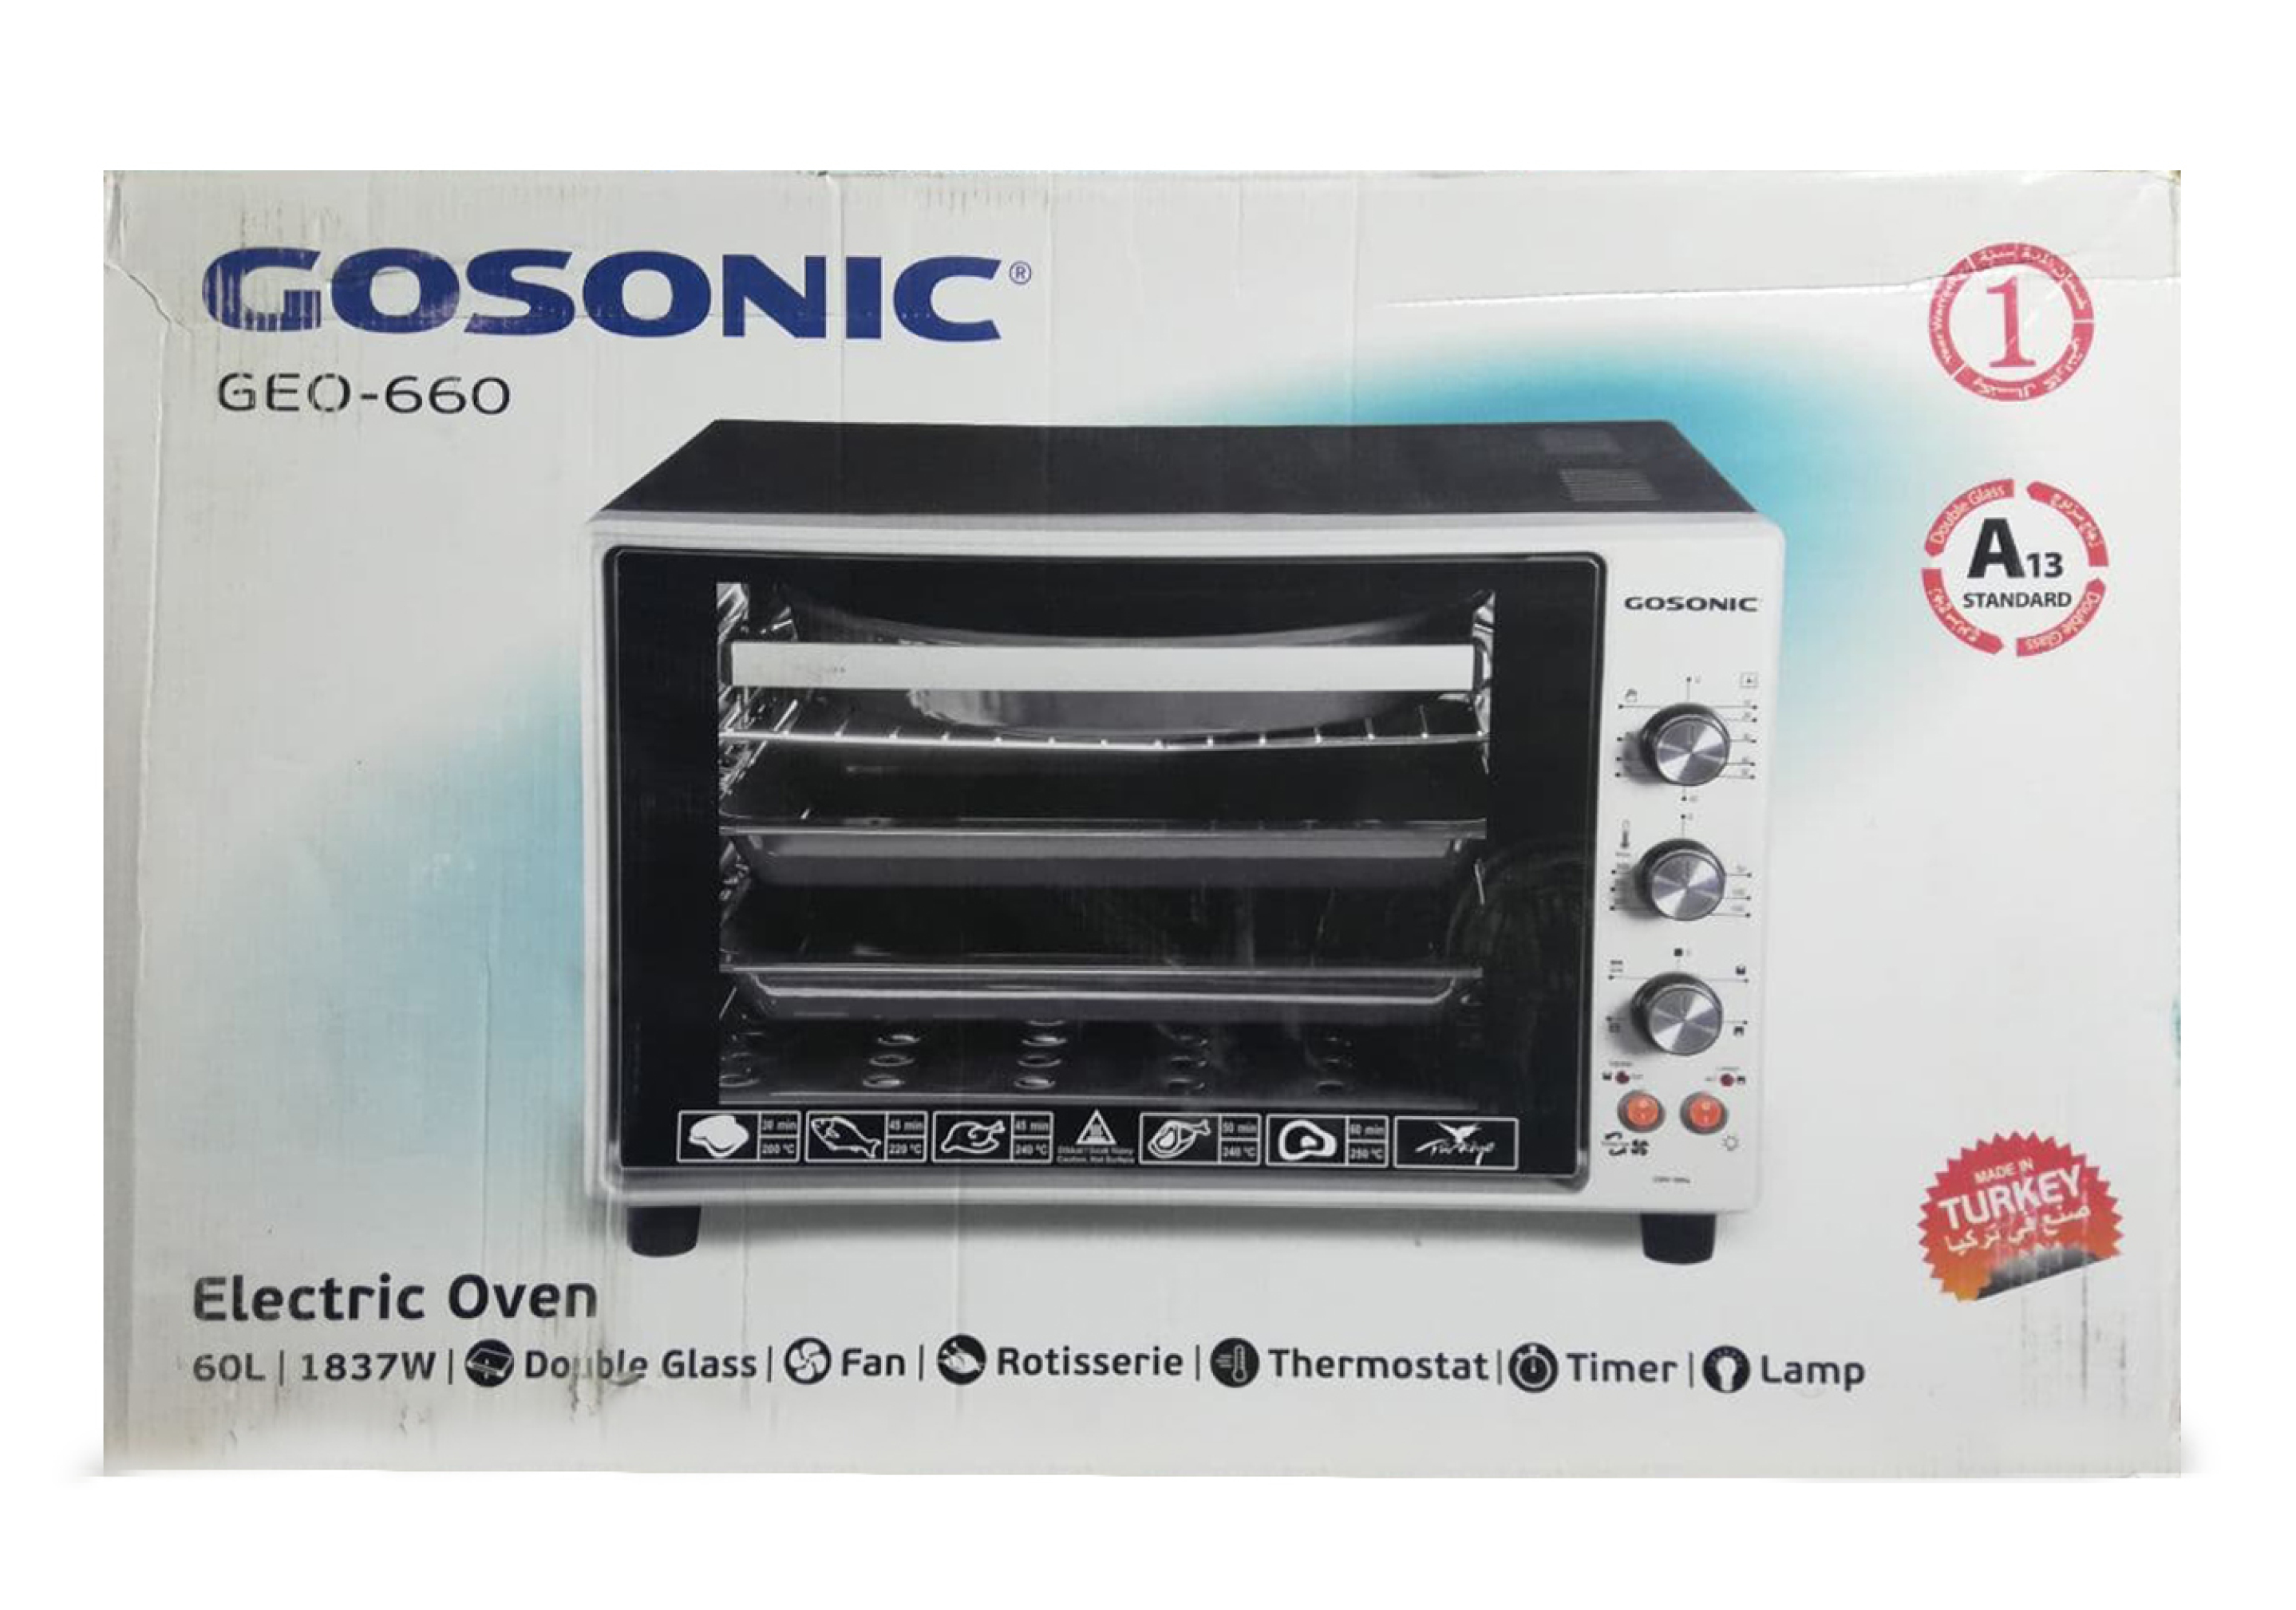  1آون توستر گوسونیک مدل Toaster Oven Gosonic Geo-660 